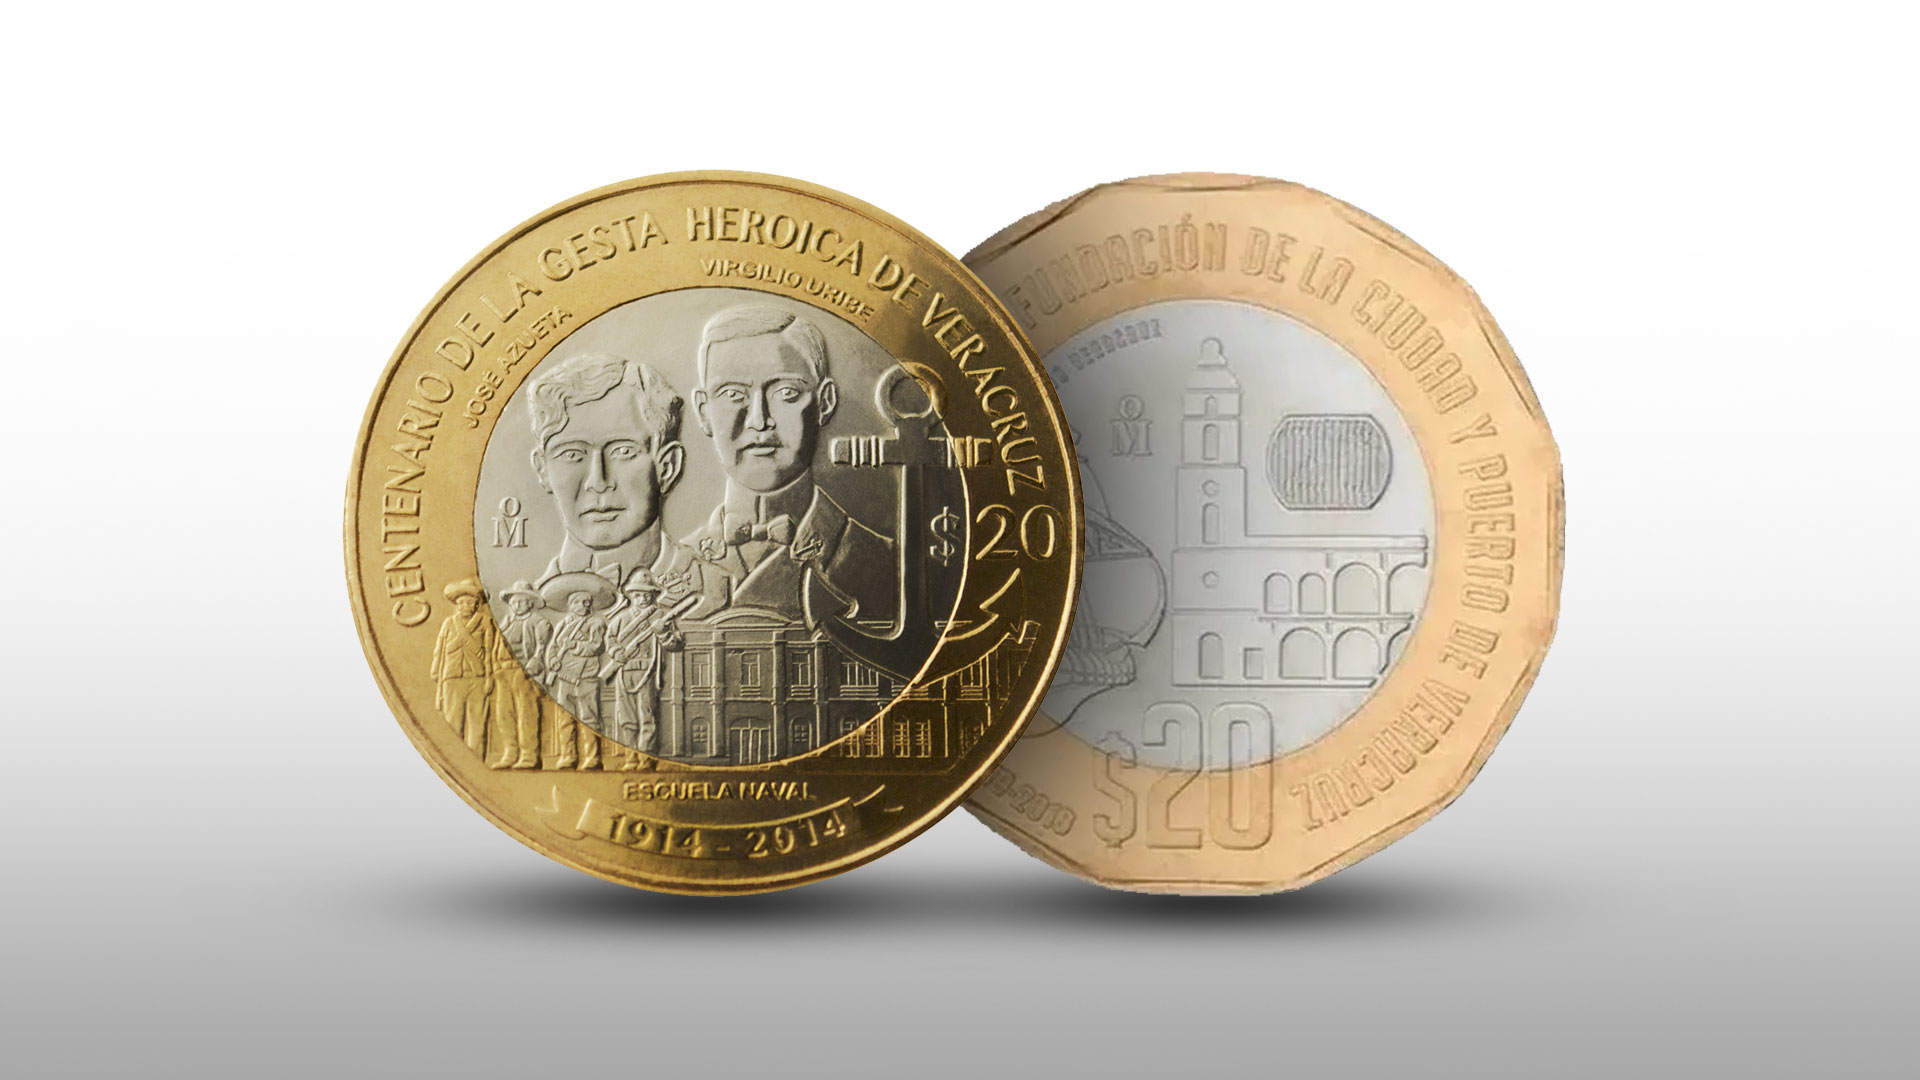 Dos monedas conmemorativas de Veracruz se venden en más de 90 mil pesos por internet 